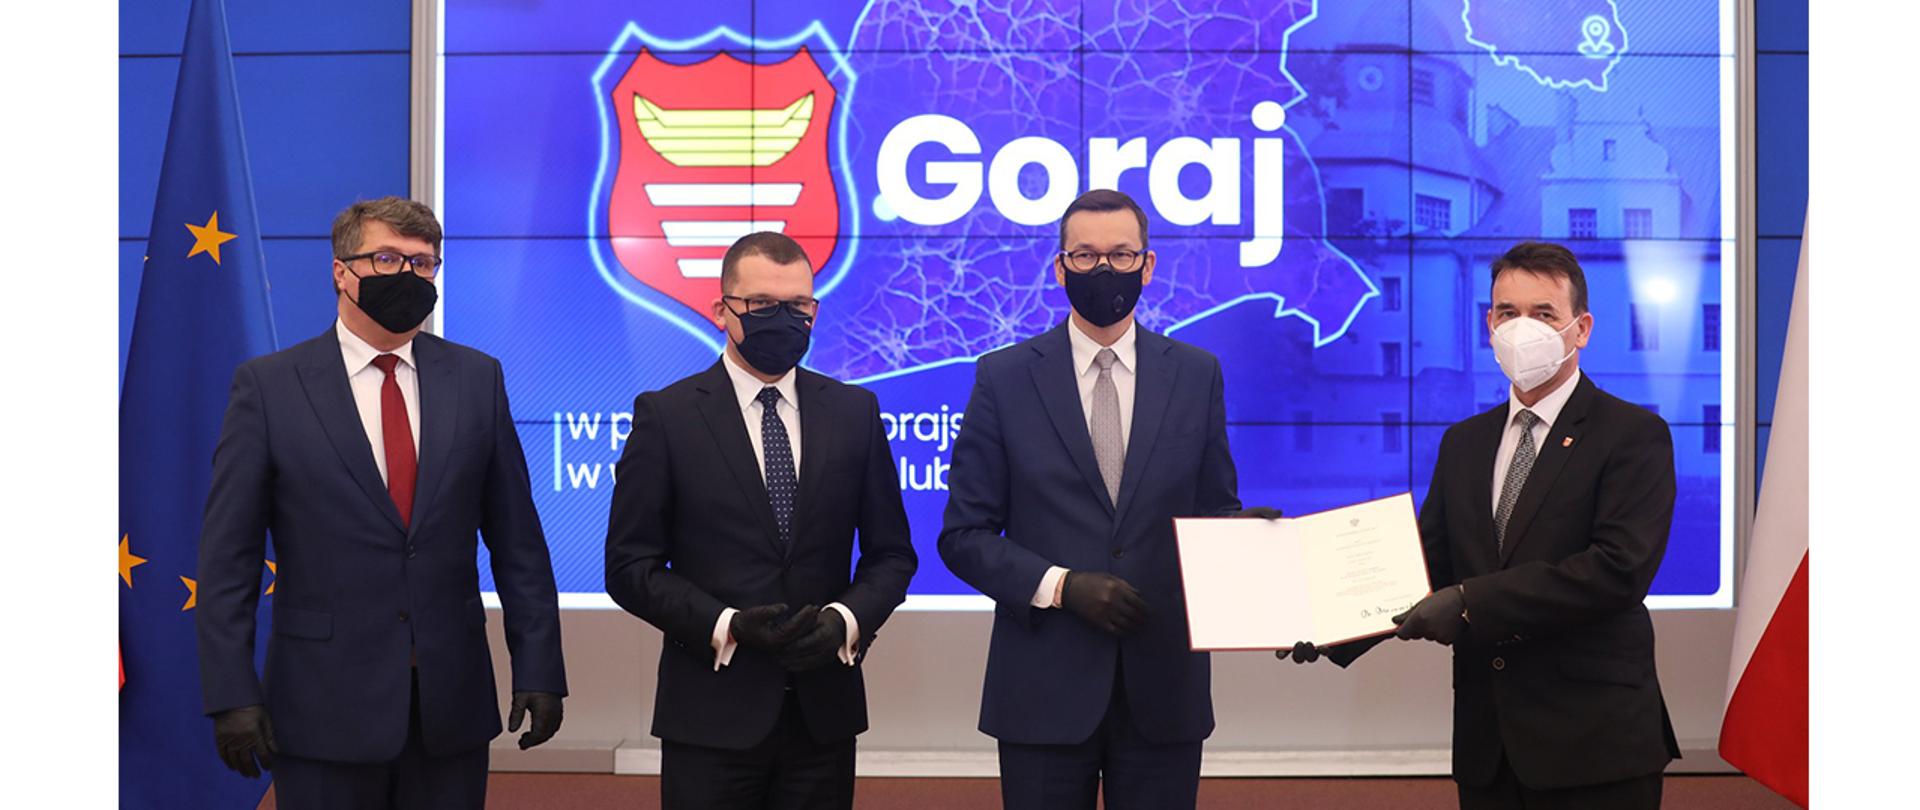 Na zdjęciu: premier Mateusz Morawiecki wraz z wiceministrami Maciejem Wąsikiem oraz Pawłem Szefernakerem wręczają akty nadania statusu miasta wójtowi gminy Goraj 